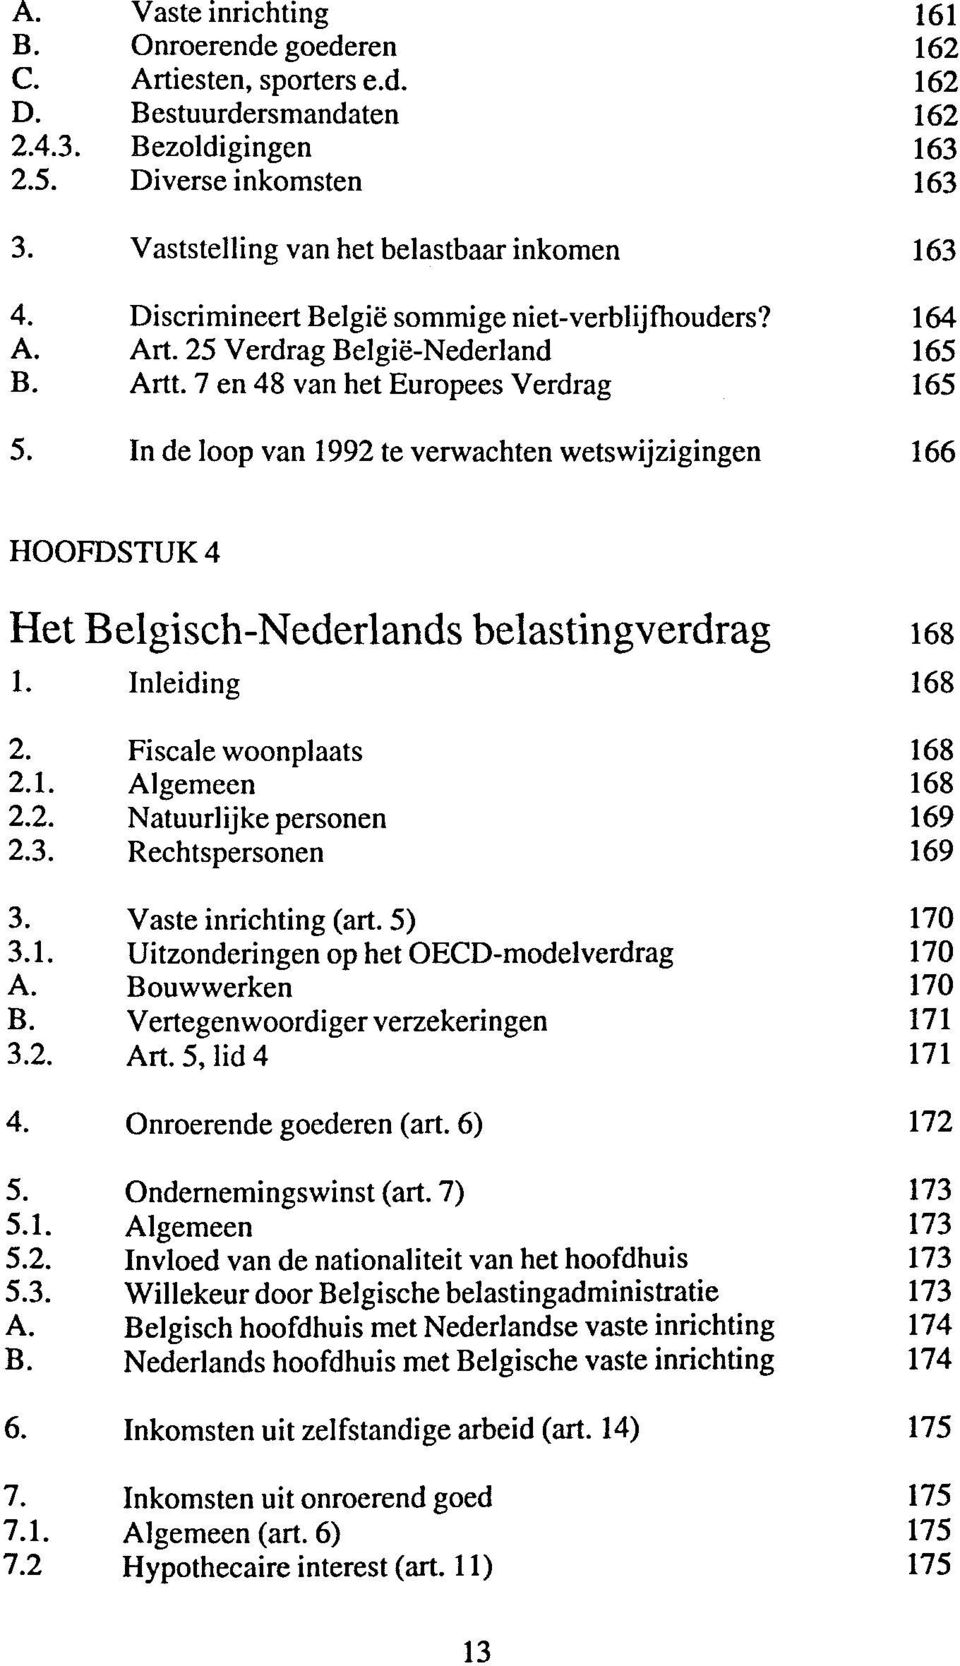 In de loop van 1992 te verwachten wetswijzigingen 166 H00FDSTUK4 Het Belgisch-Nederlands belastingverdrag 168 1. 168 2. Fiscale woonplaats 168 2.1. Algemeen 168 2.2. Natuurlijke personen 169 2.3.